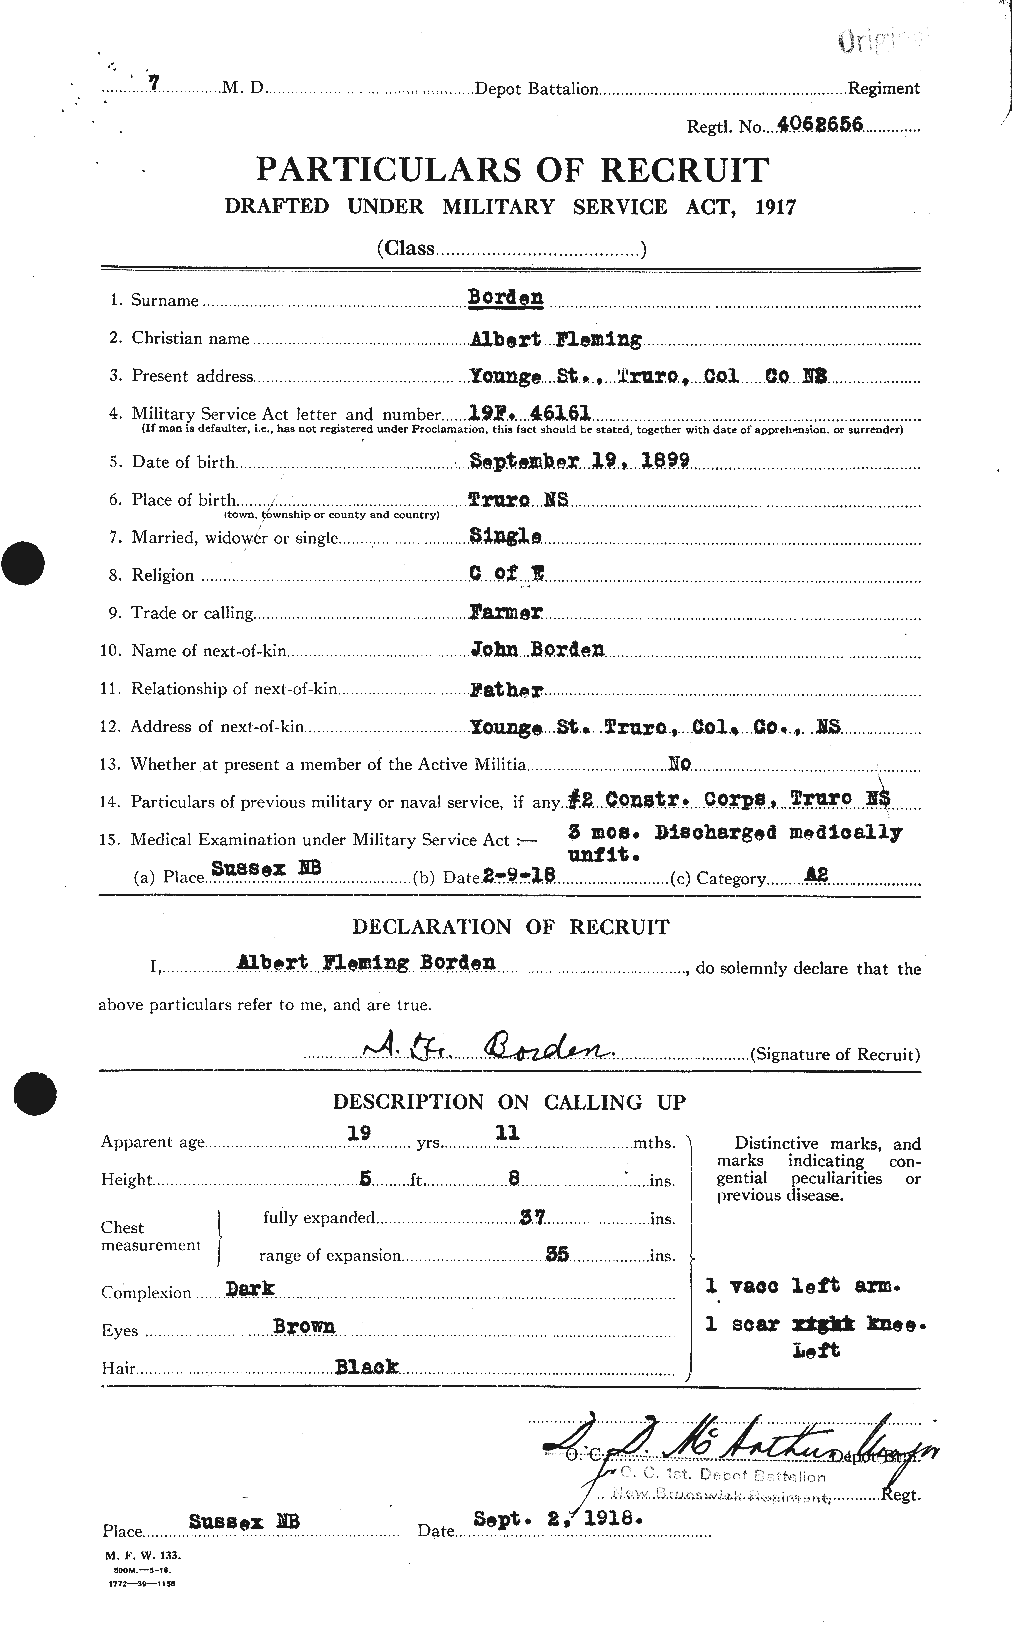 Dossiers du Personnel de la Première Guerre mondiale - CEC 252281a